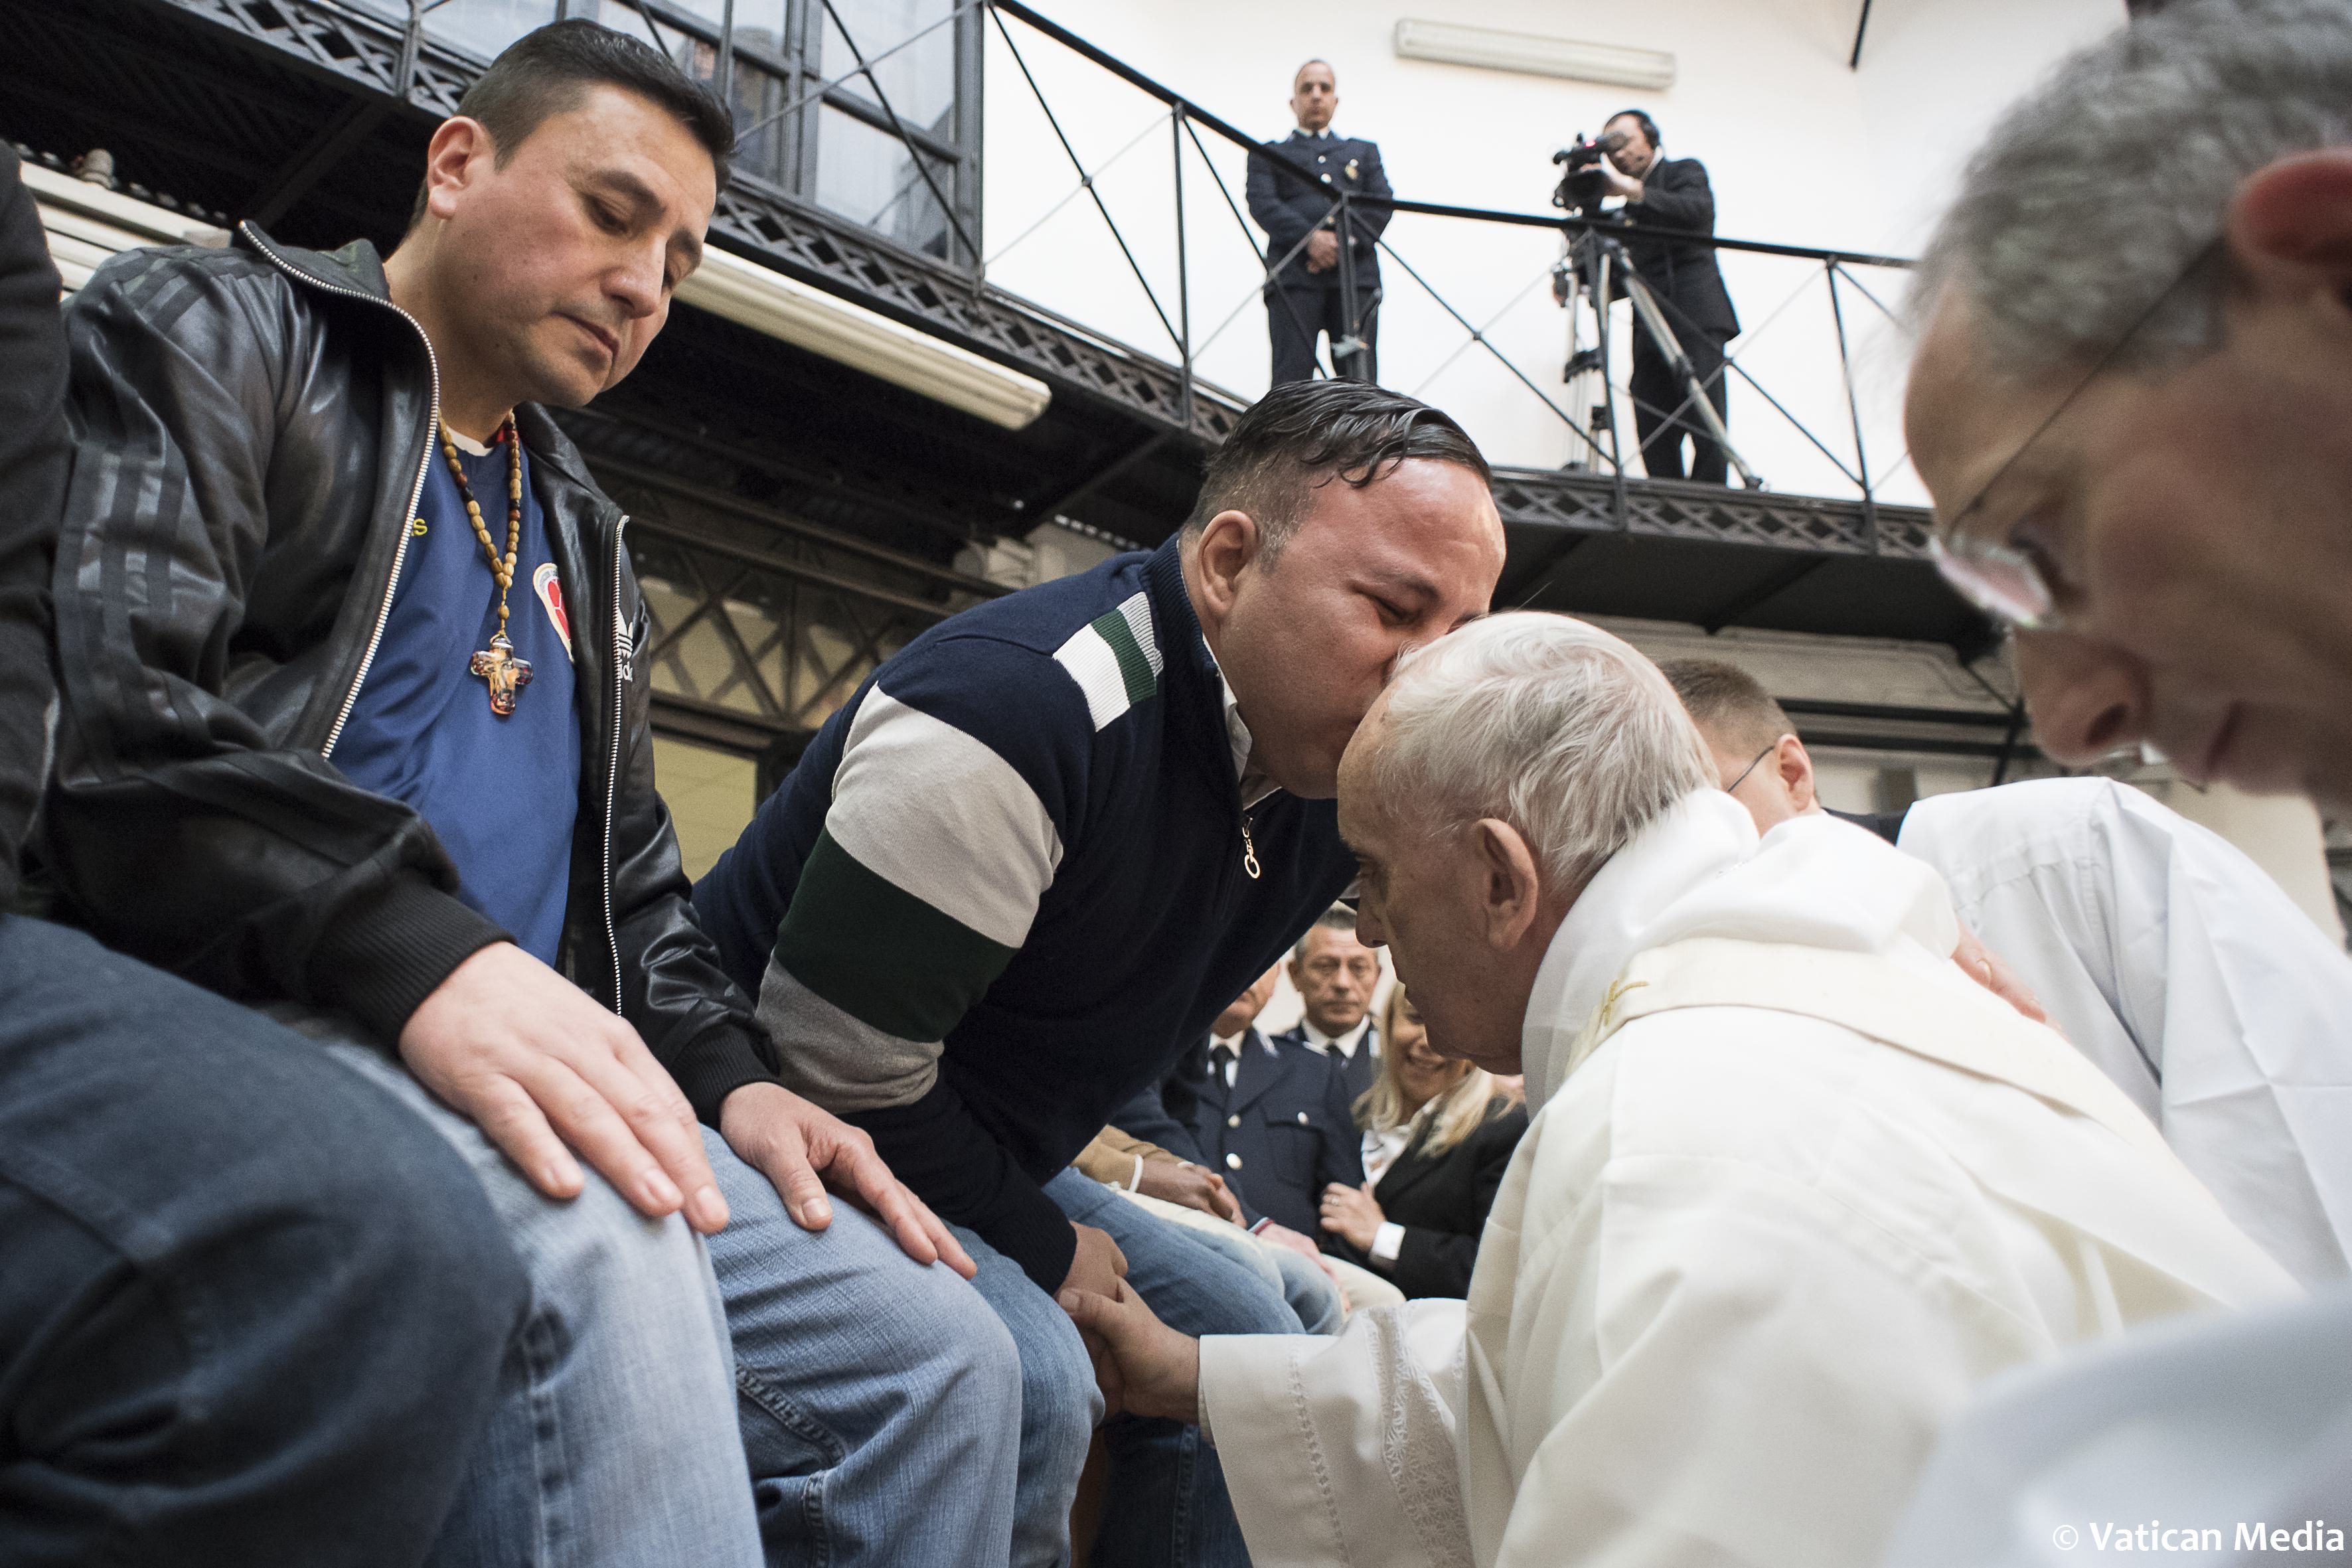 أحد المعتقلين يقبل رأس البابا